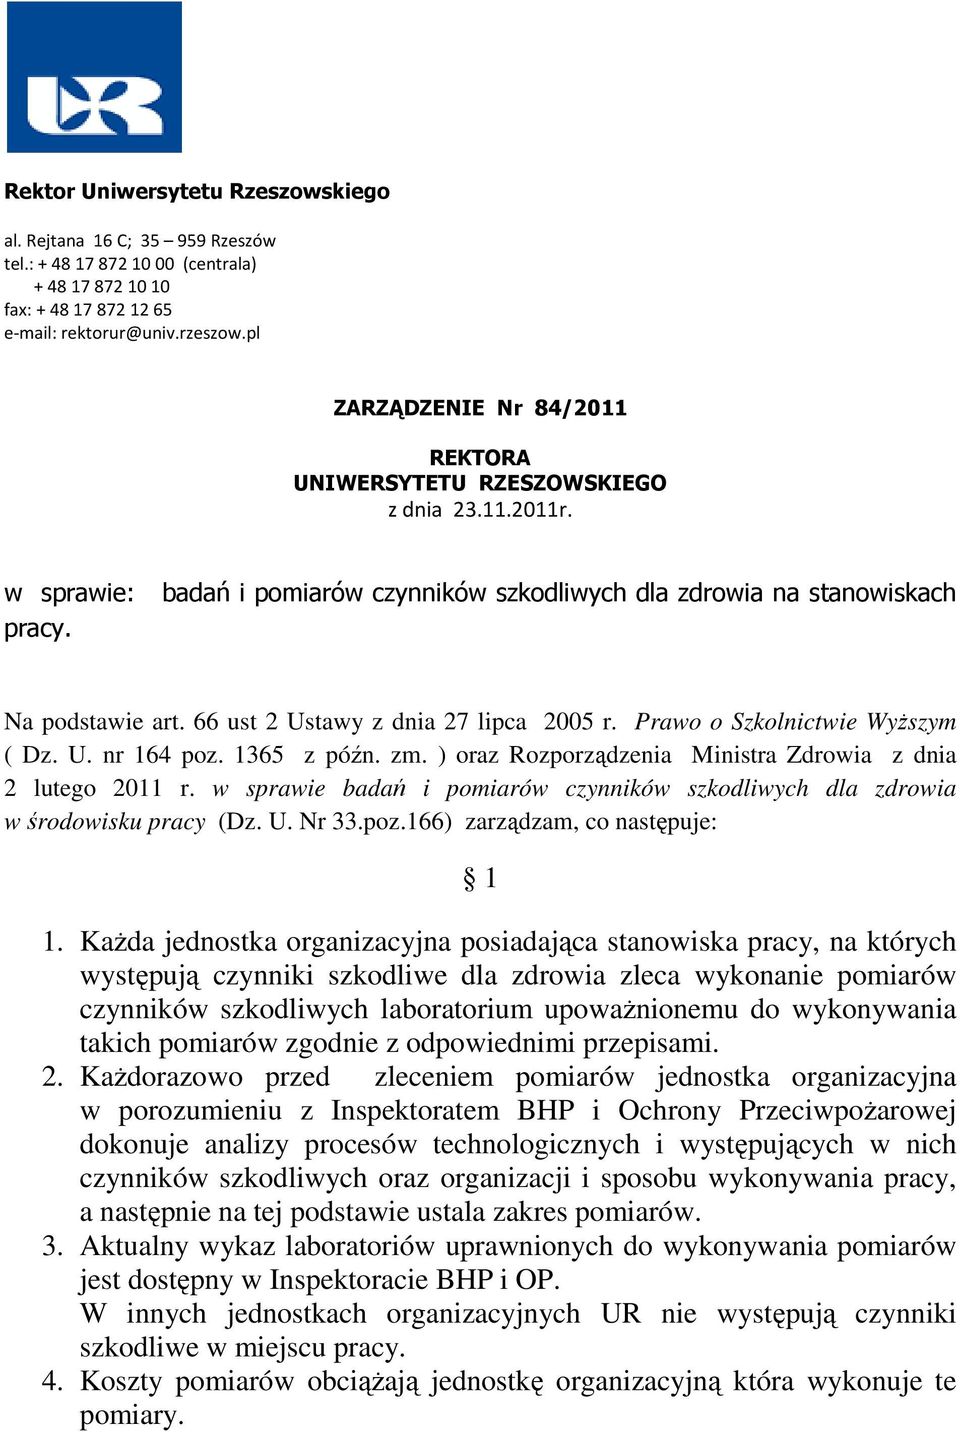 66 ust 2 Ustawy z dnia 27 lipca 2005 r. Prawo o Szkolnictwie Wyższym ( Dz. U. nr 164 poz. 1365 z późn. zm. ) oraz Rozporządzenia Ministra Zdrowia z dnia 2 lutego 2011 r.